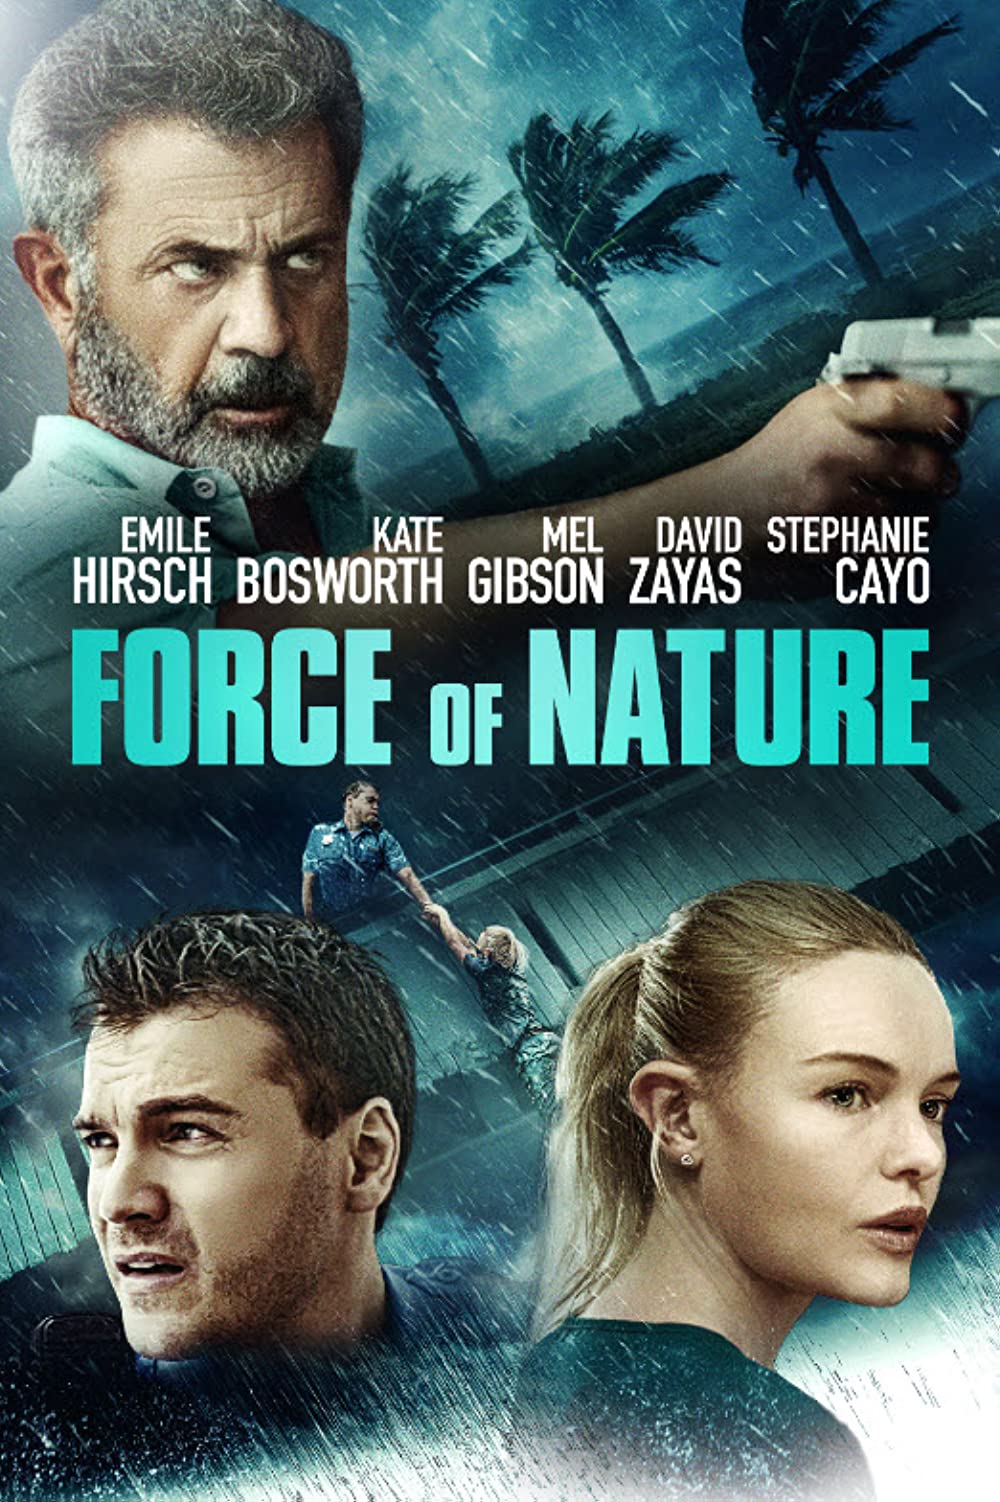 Filmbeschreibung zu Force of Nature